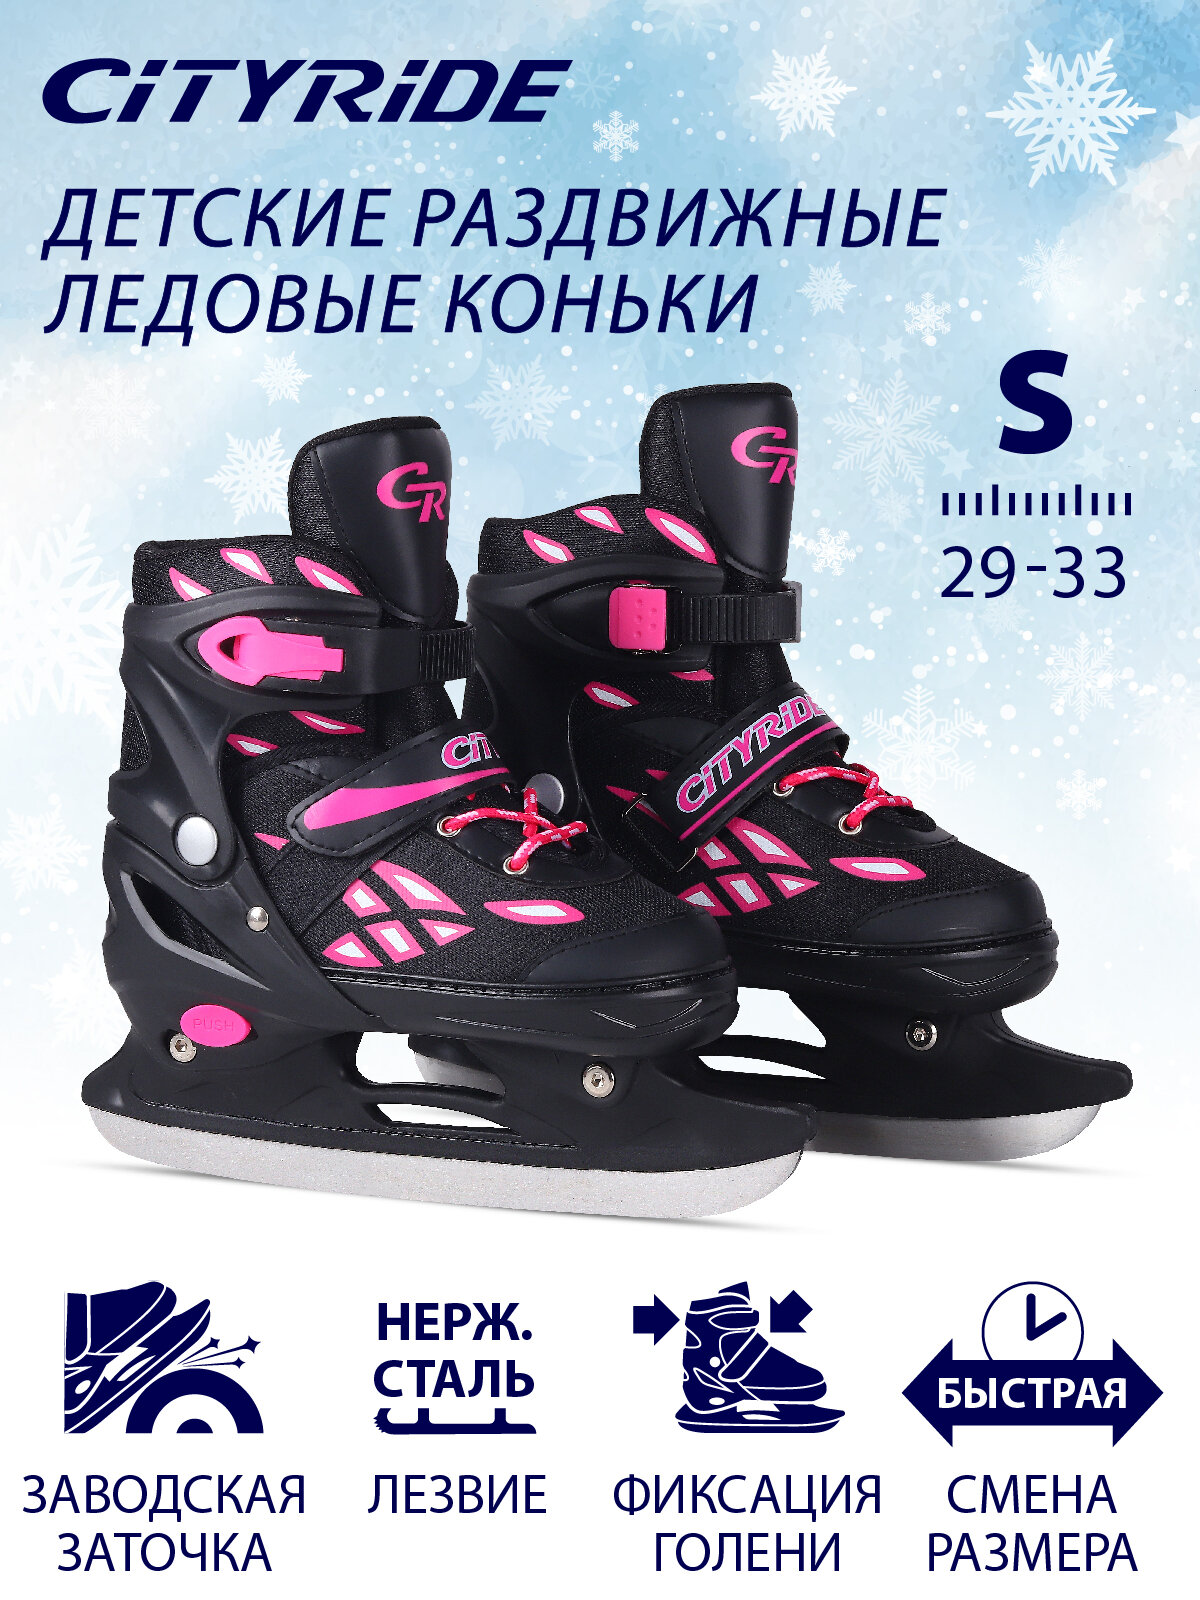 Детские раздвижные ледовые коньки, лезвие нержавеющая сталь, текстильный мысок, черно/розовый, S(29-33)